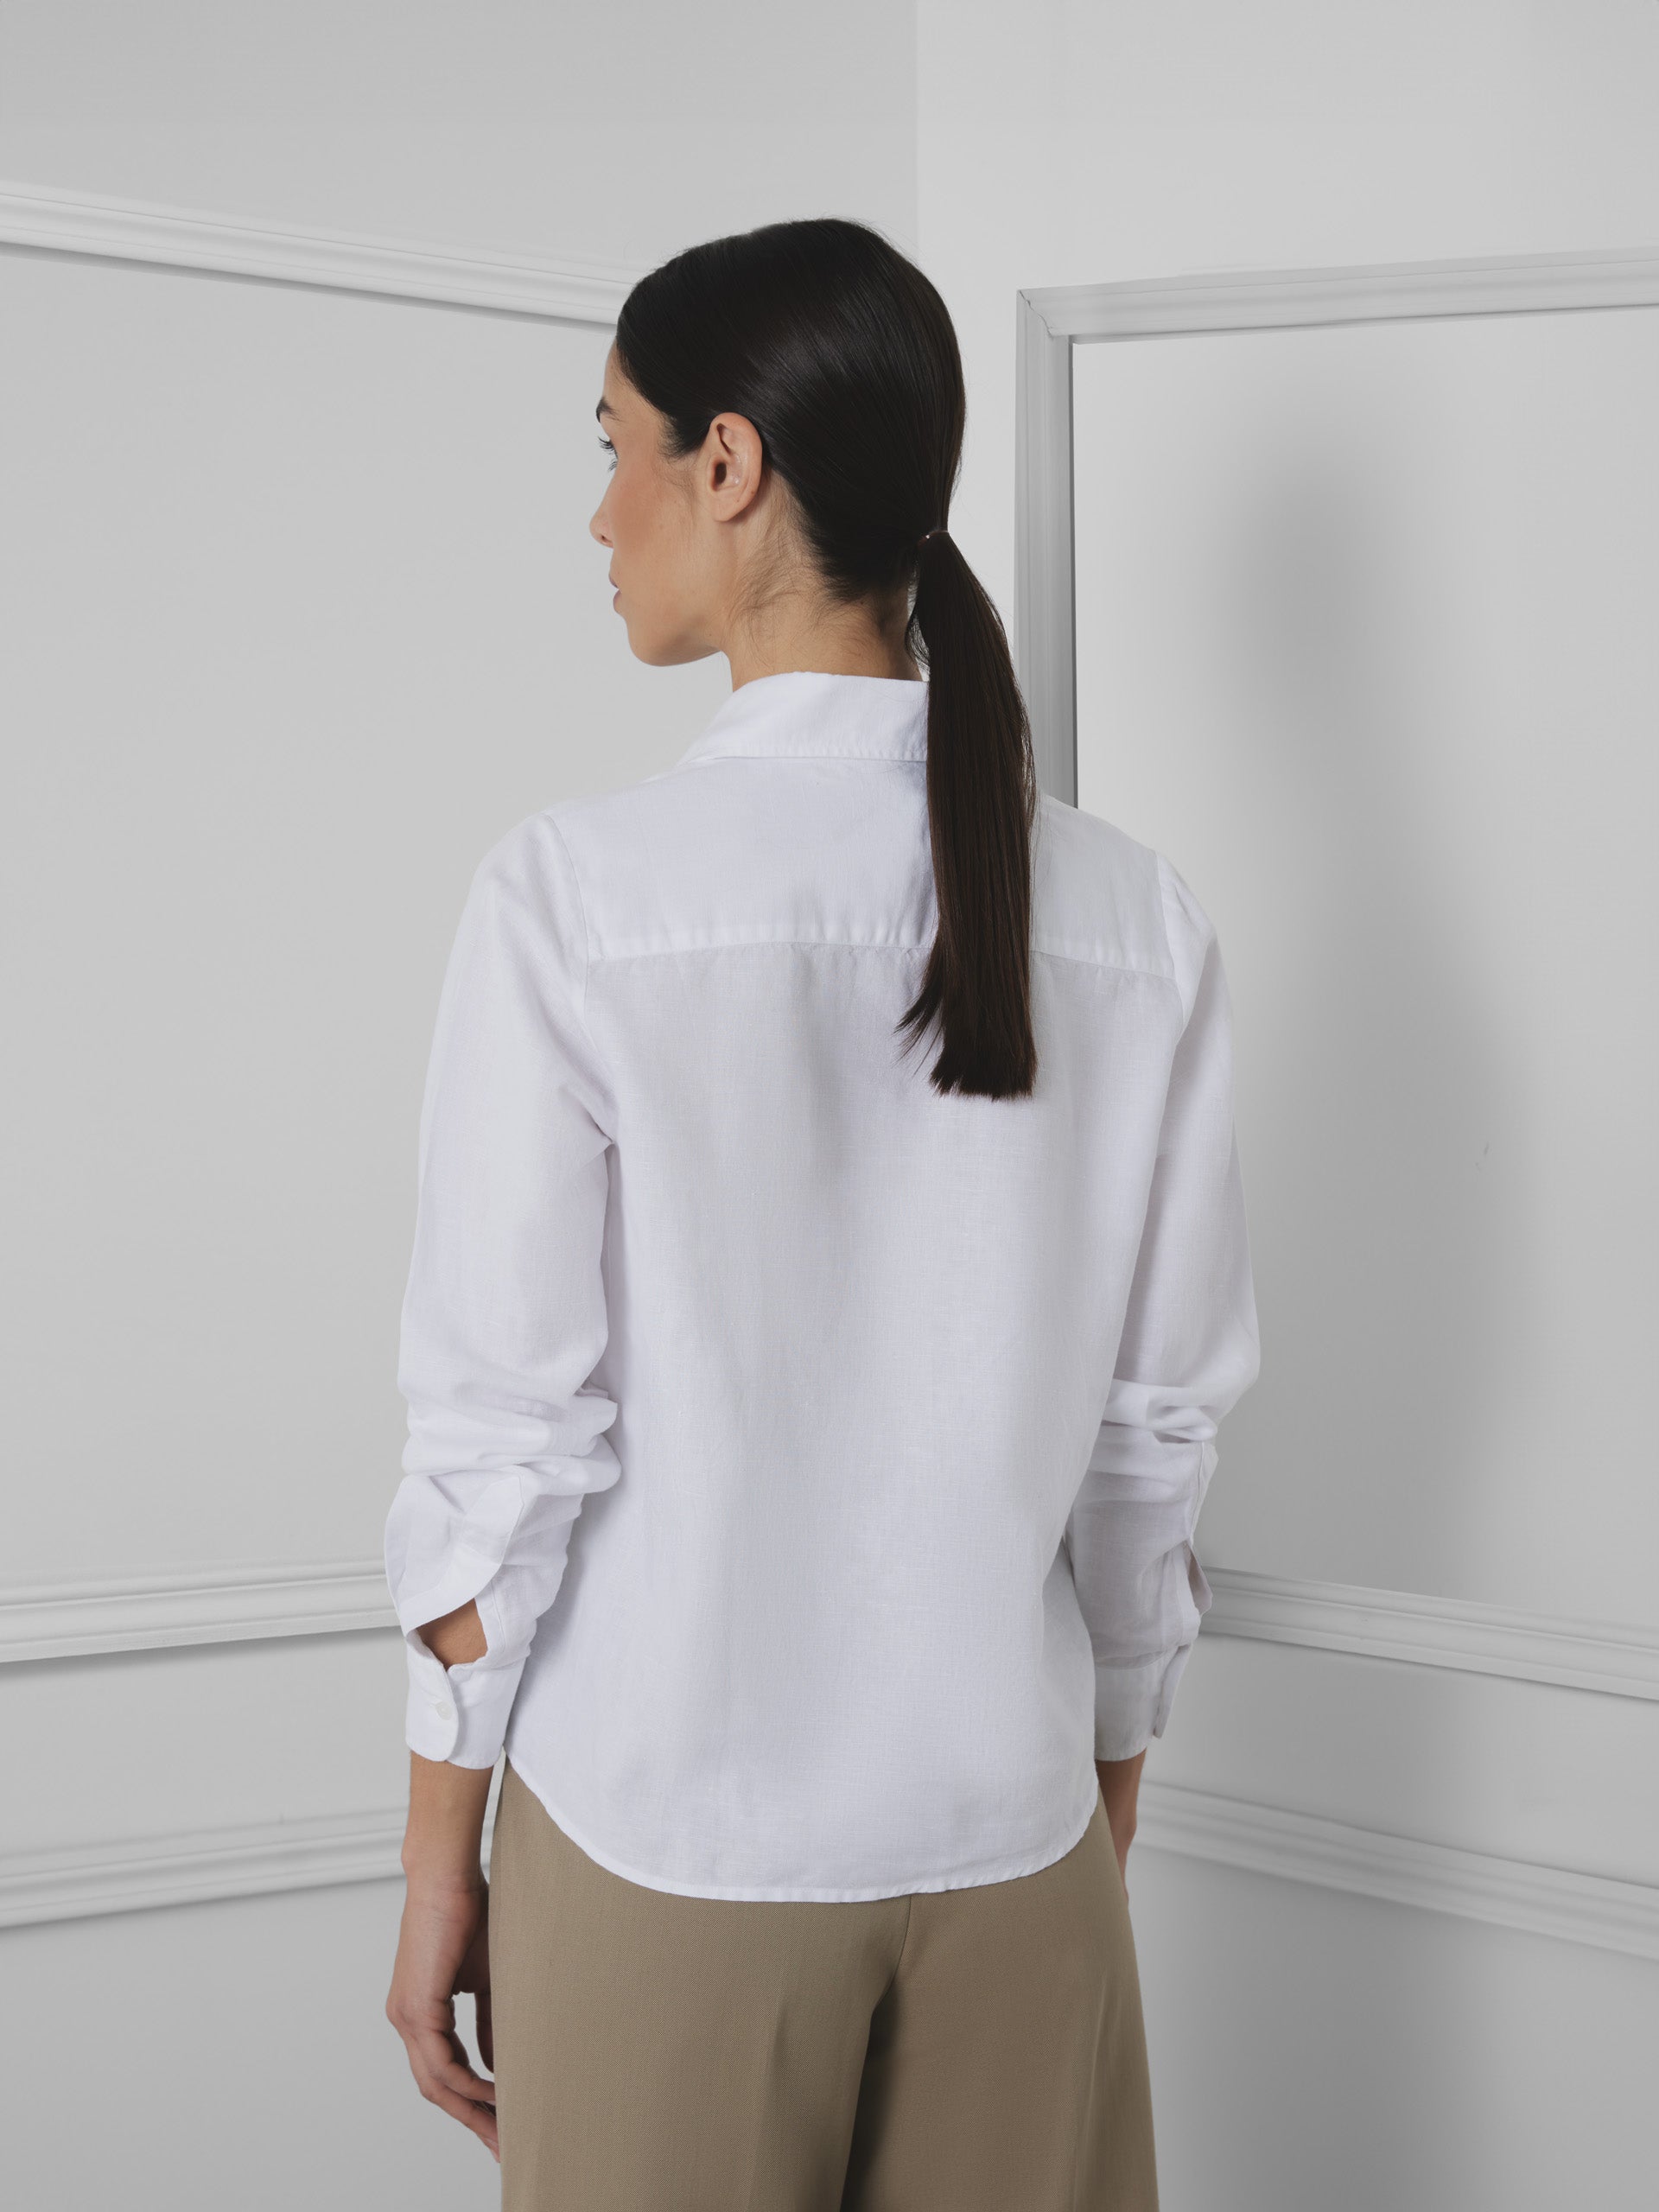 Camisa woman unique lino blanca